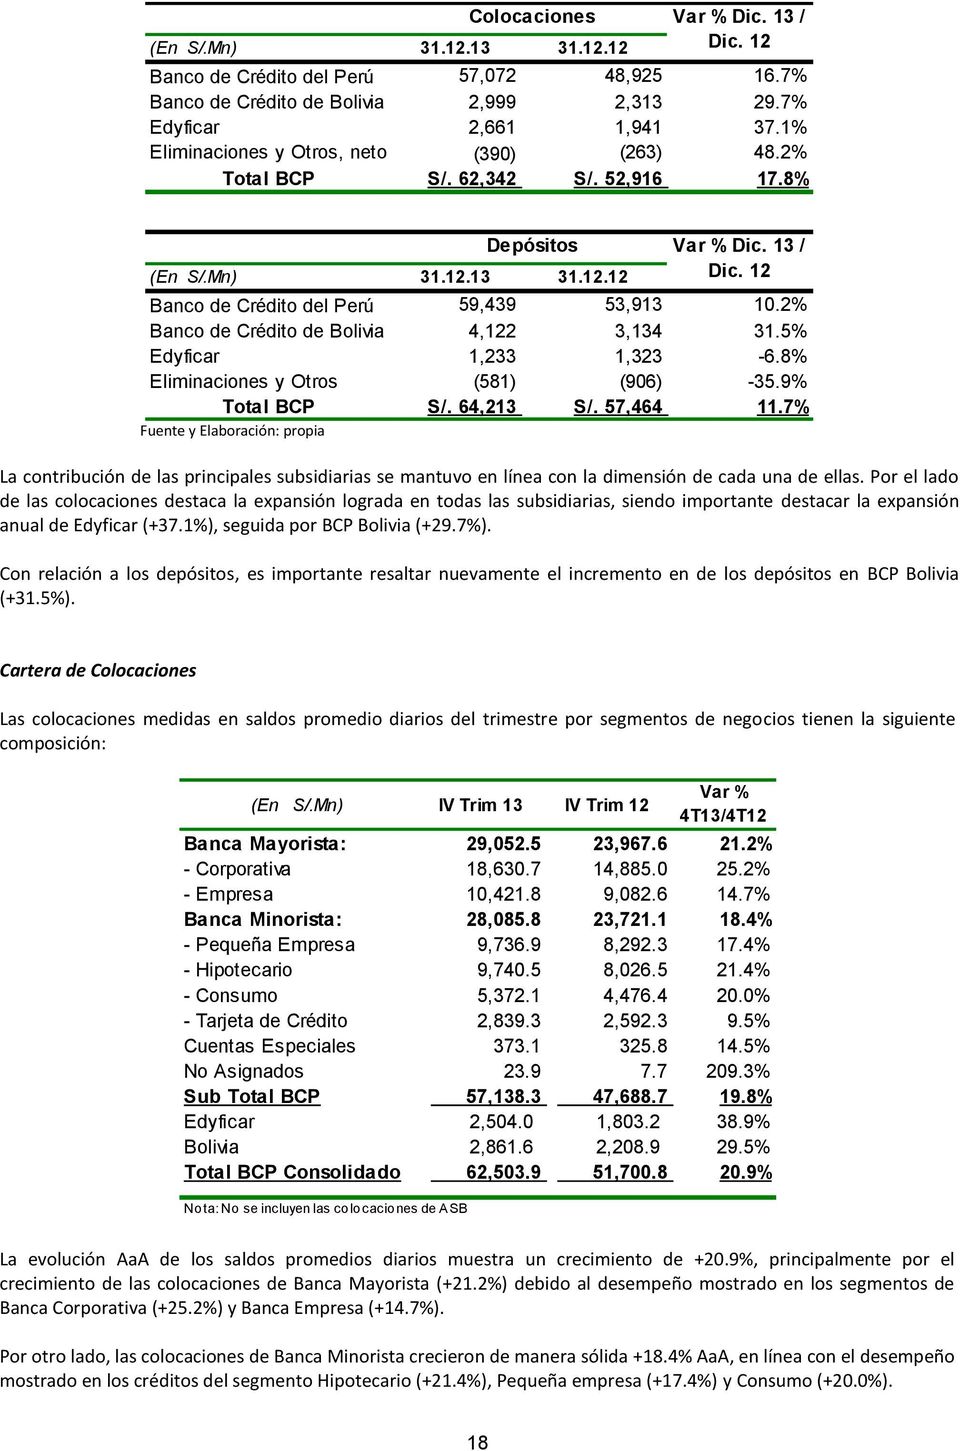 2% Banco de Crédito de Bolivia 4,122 3,134 31.5% Edyficar 1,233 1,323-6.8% Eliminaciones y Otros (581) (906) -35.9% Total BCP S/. 64,213 S/. 57,464 11.